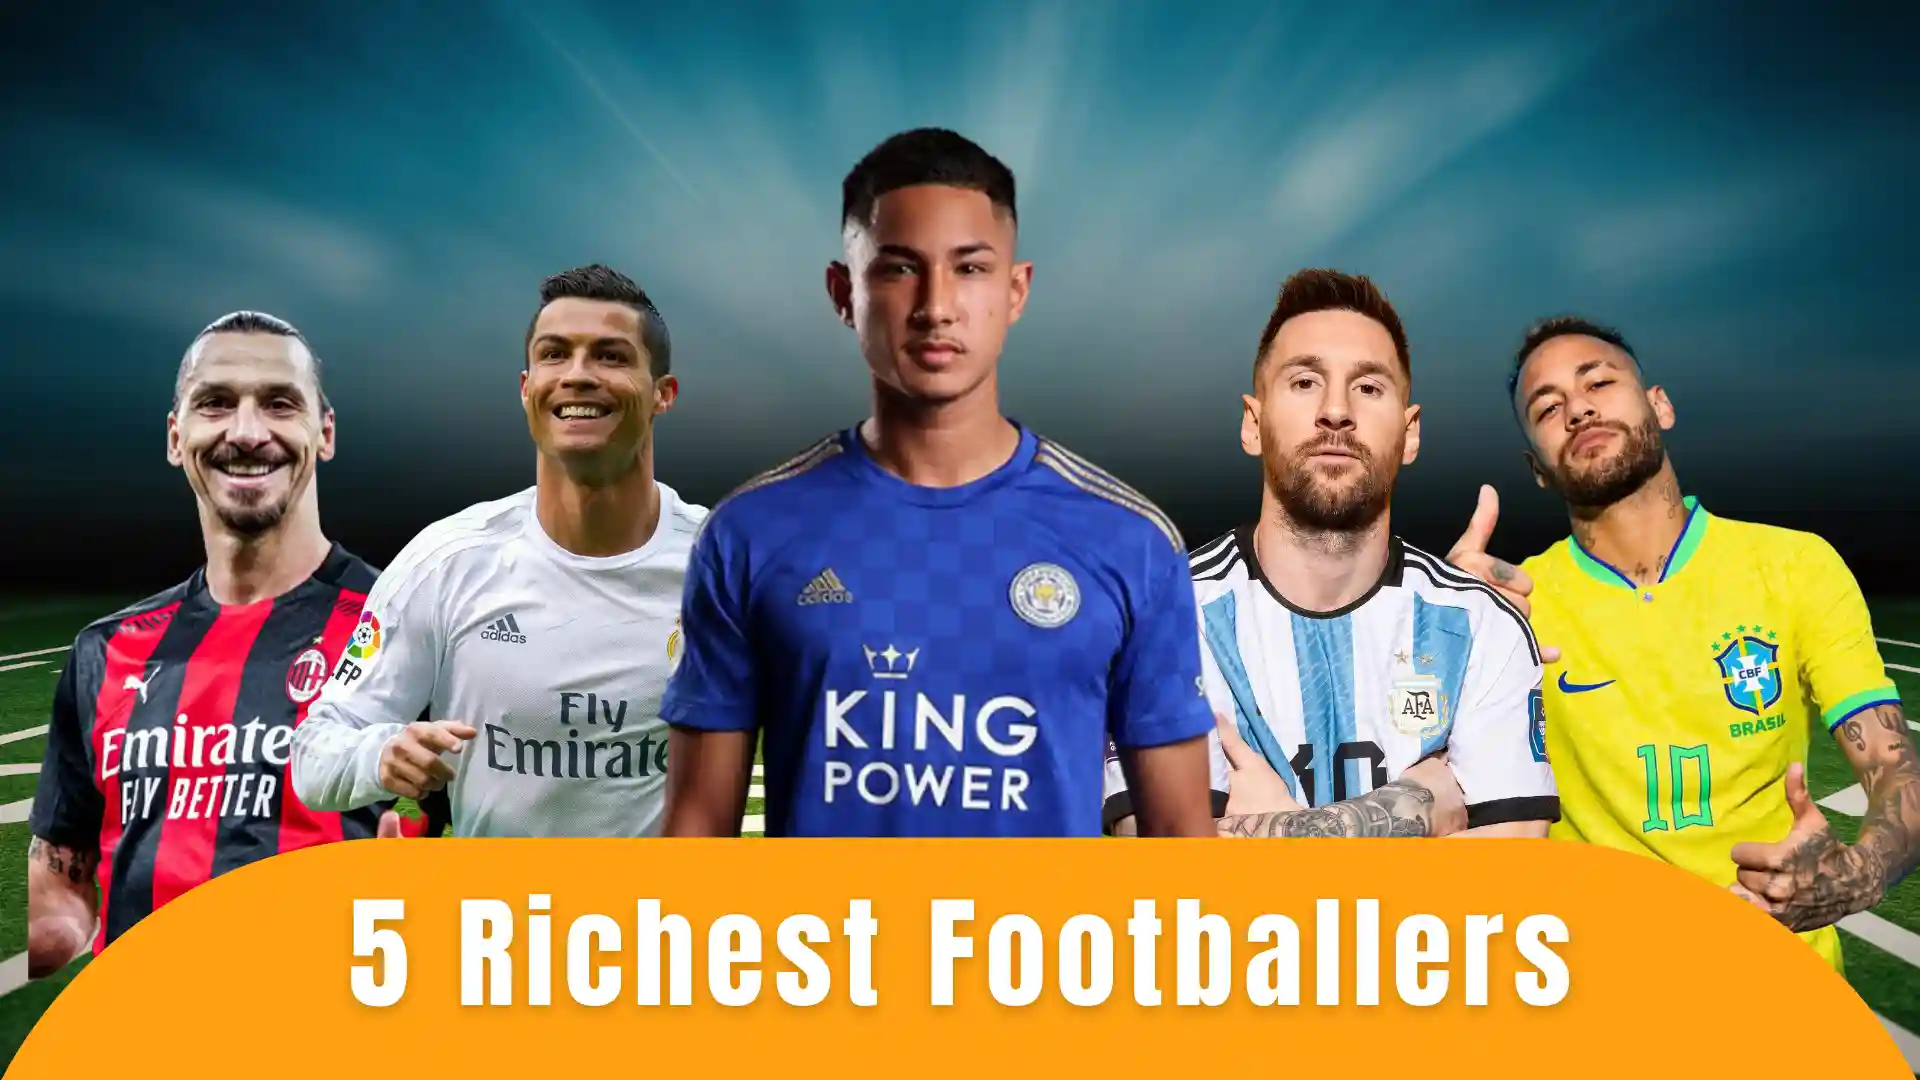 richest footballers